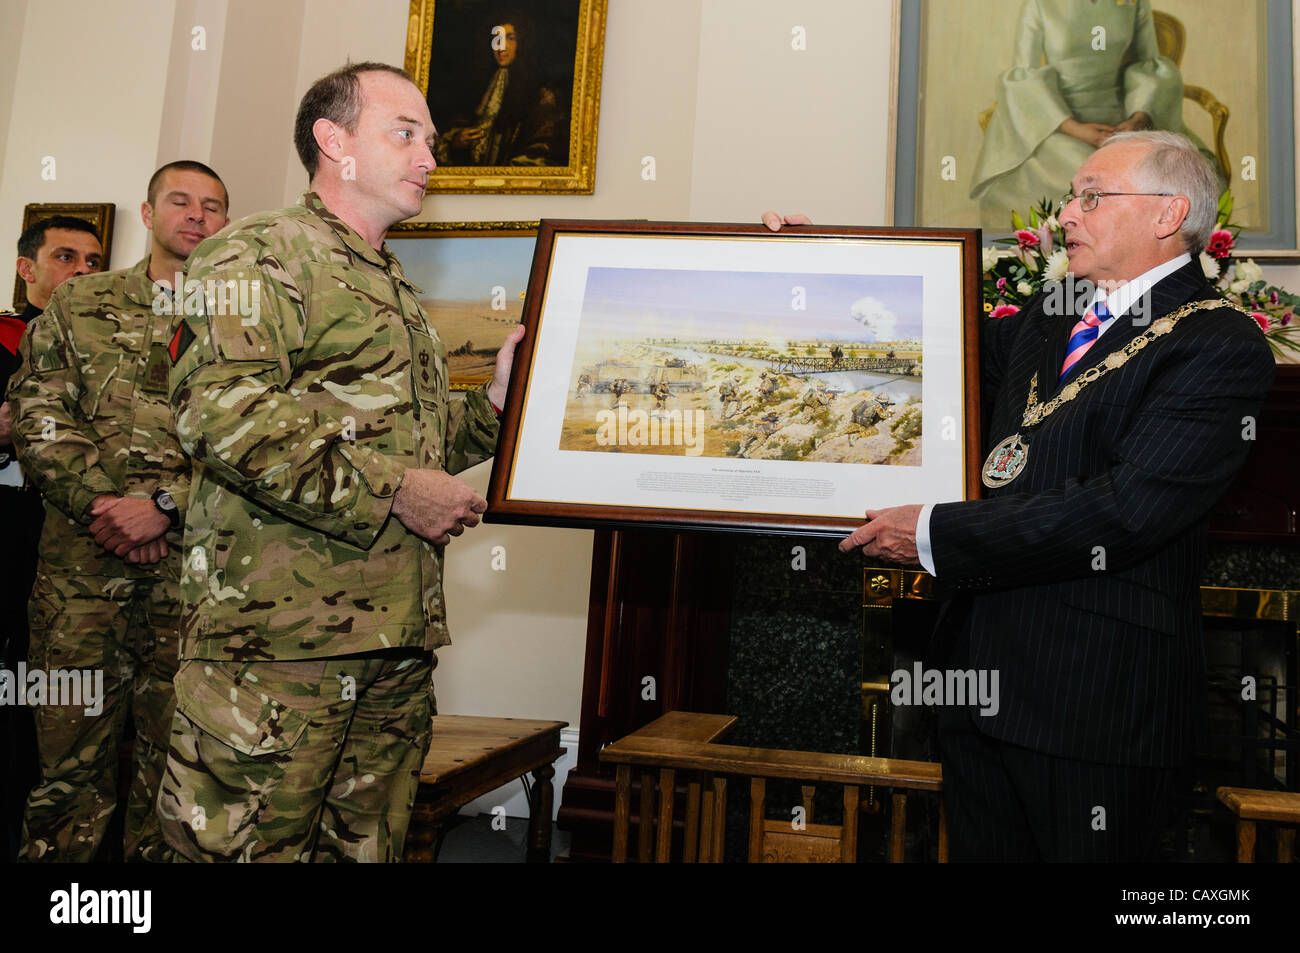 Holywood, erhält 05.03.2012 - Bürgermeister von North Down, Cllr James McKerrow, ein Geschenk eines Bildes als Soldaten begrüßte nach Hause nach einer Tour of Duty in Afghanistan Stockfoto